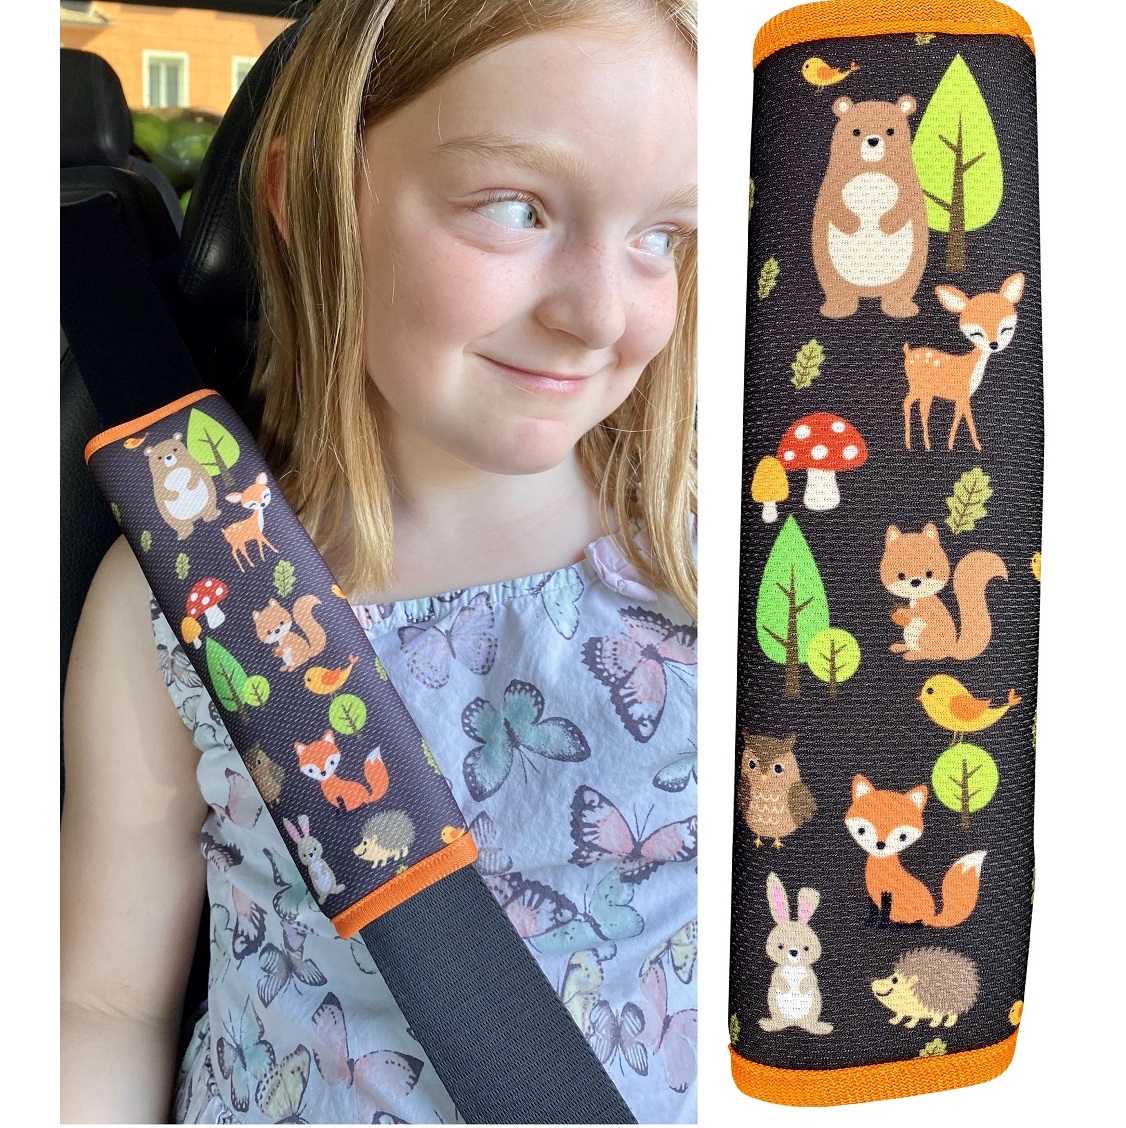 Kind Kinder Kleinkind Auto Sicherheitsgurt Schulterpolster Cover Head Neck Support